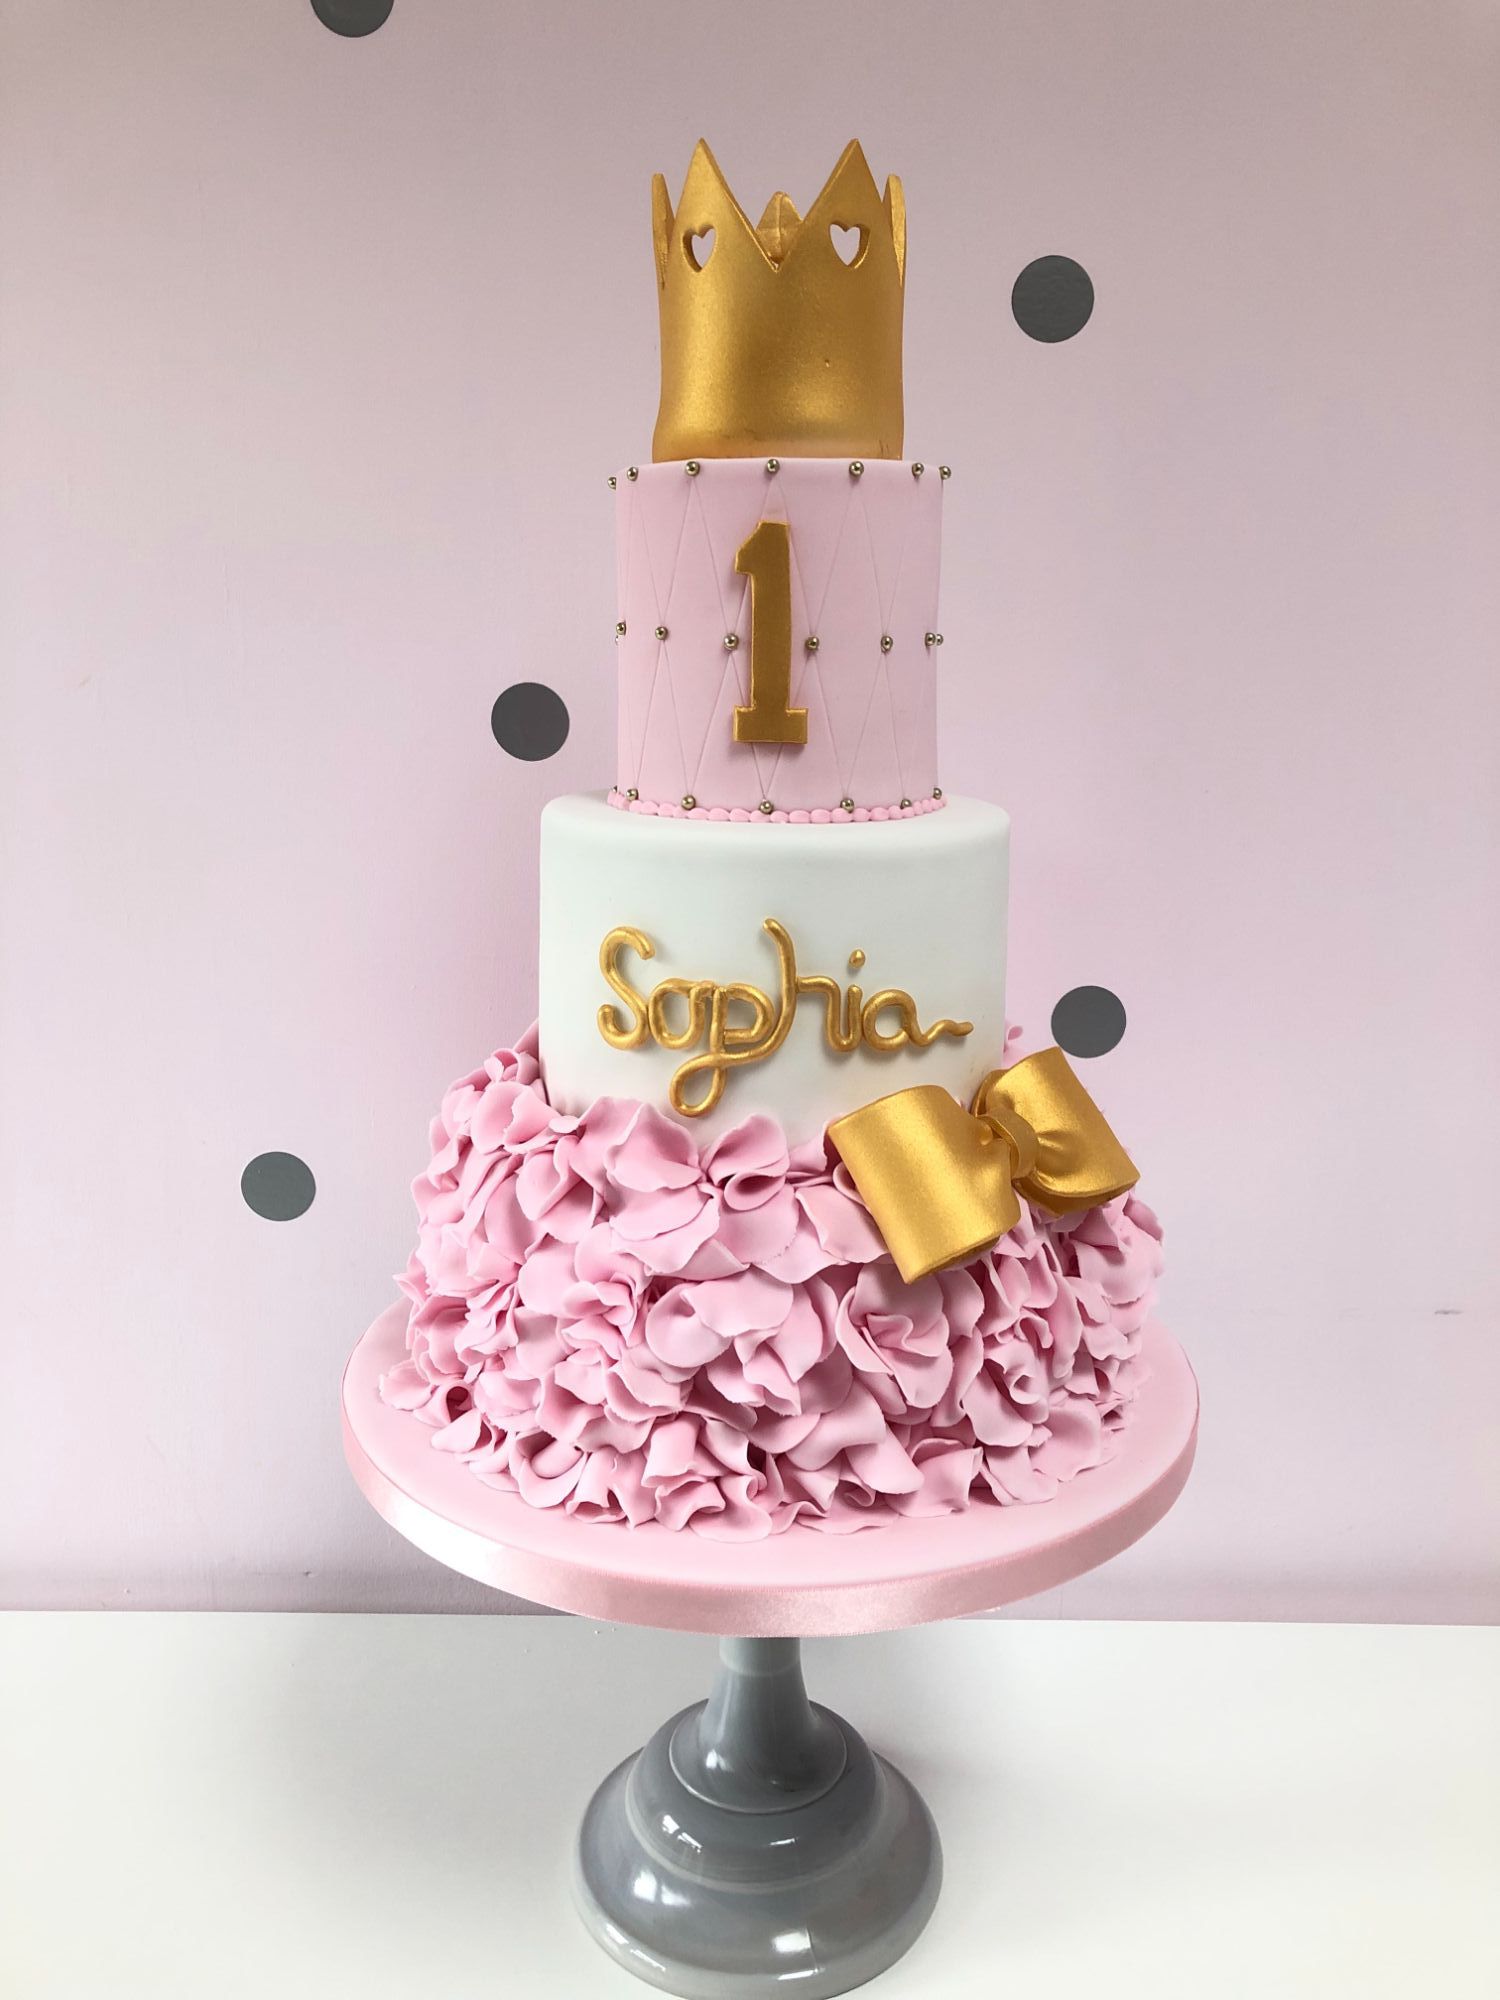 HJCD - celebration cakes (7)